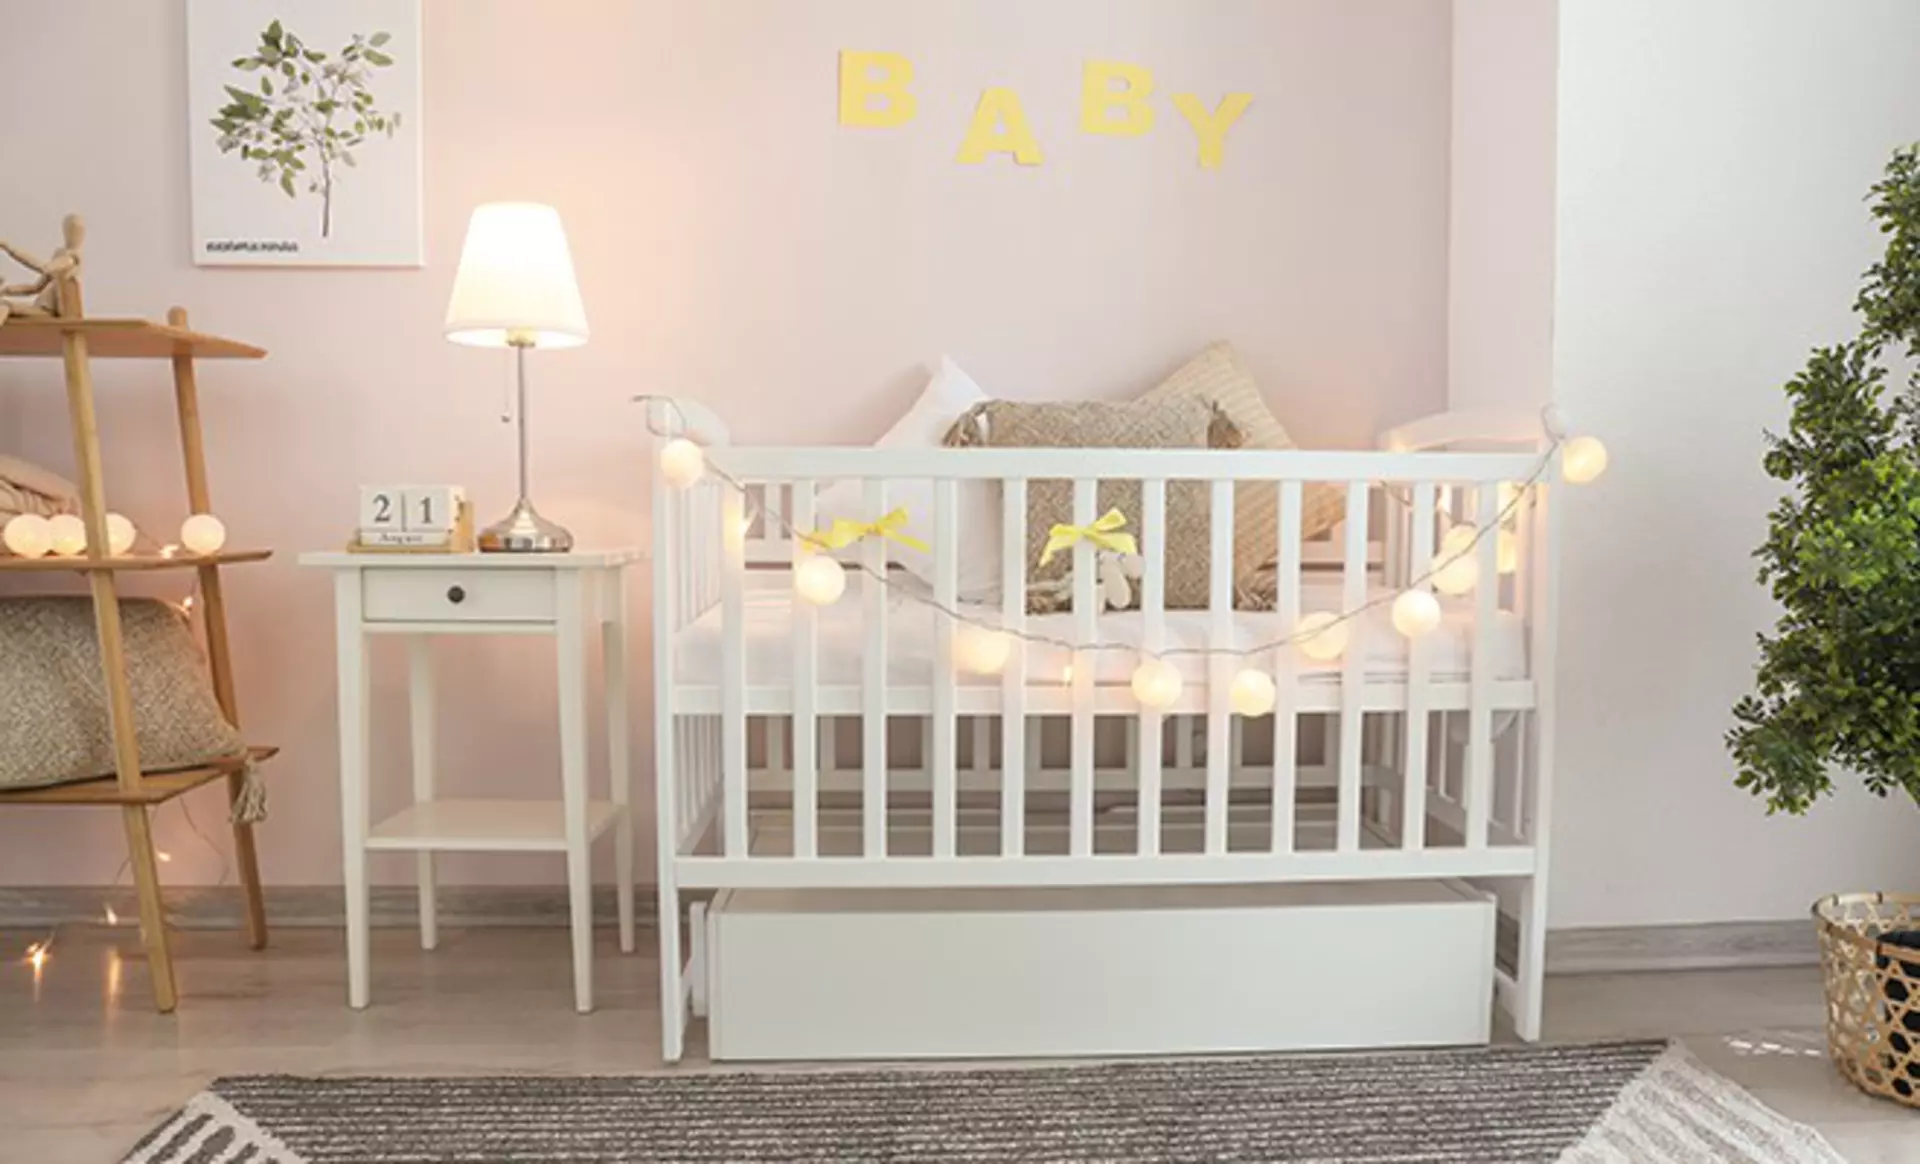 Nachtlicht, Deckenleuchten mit fröhlichen Motiven und blendfreie Tischleuchten - die richtige Beleuchtung im Babyzimmer